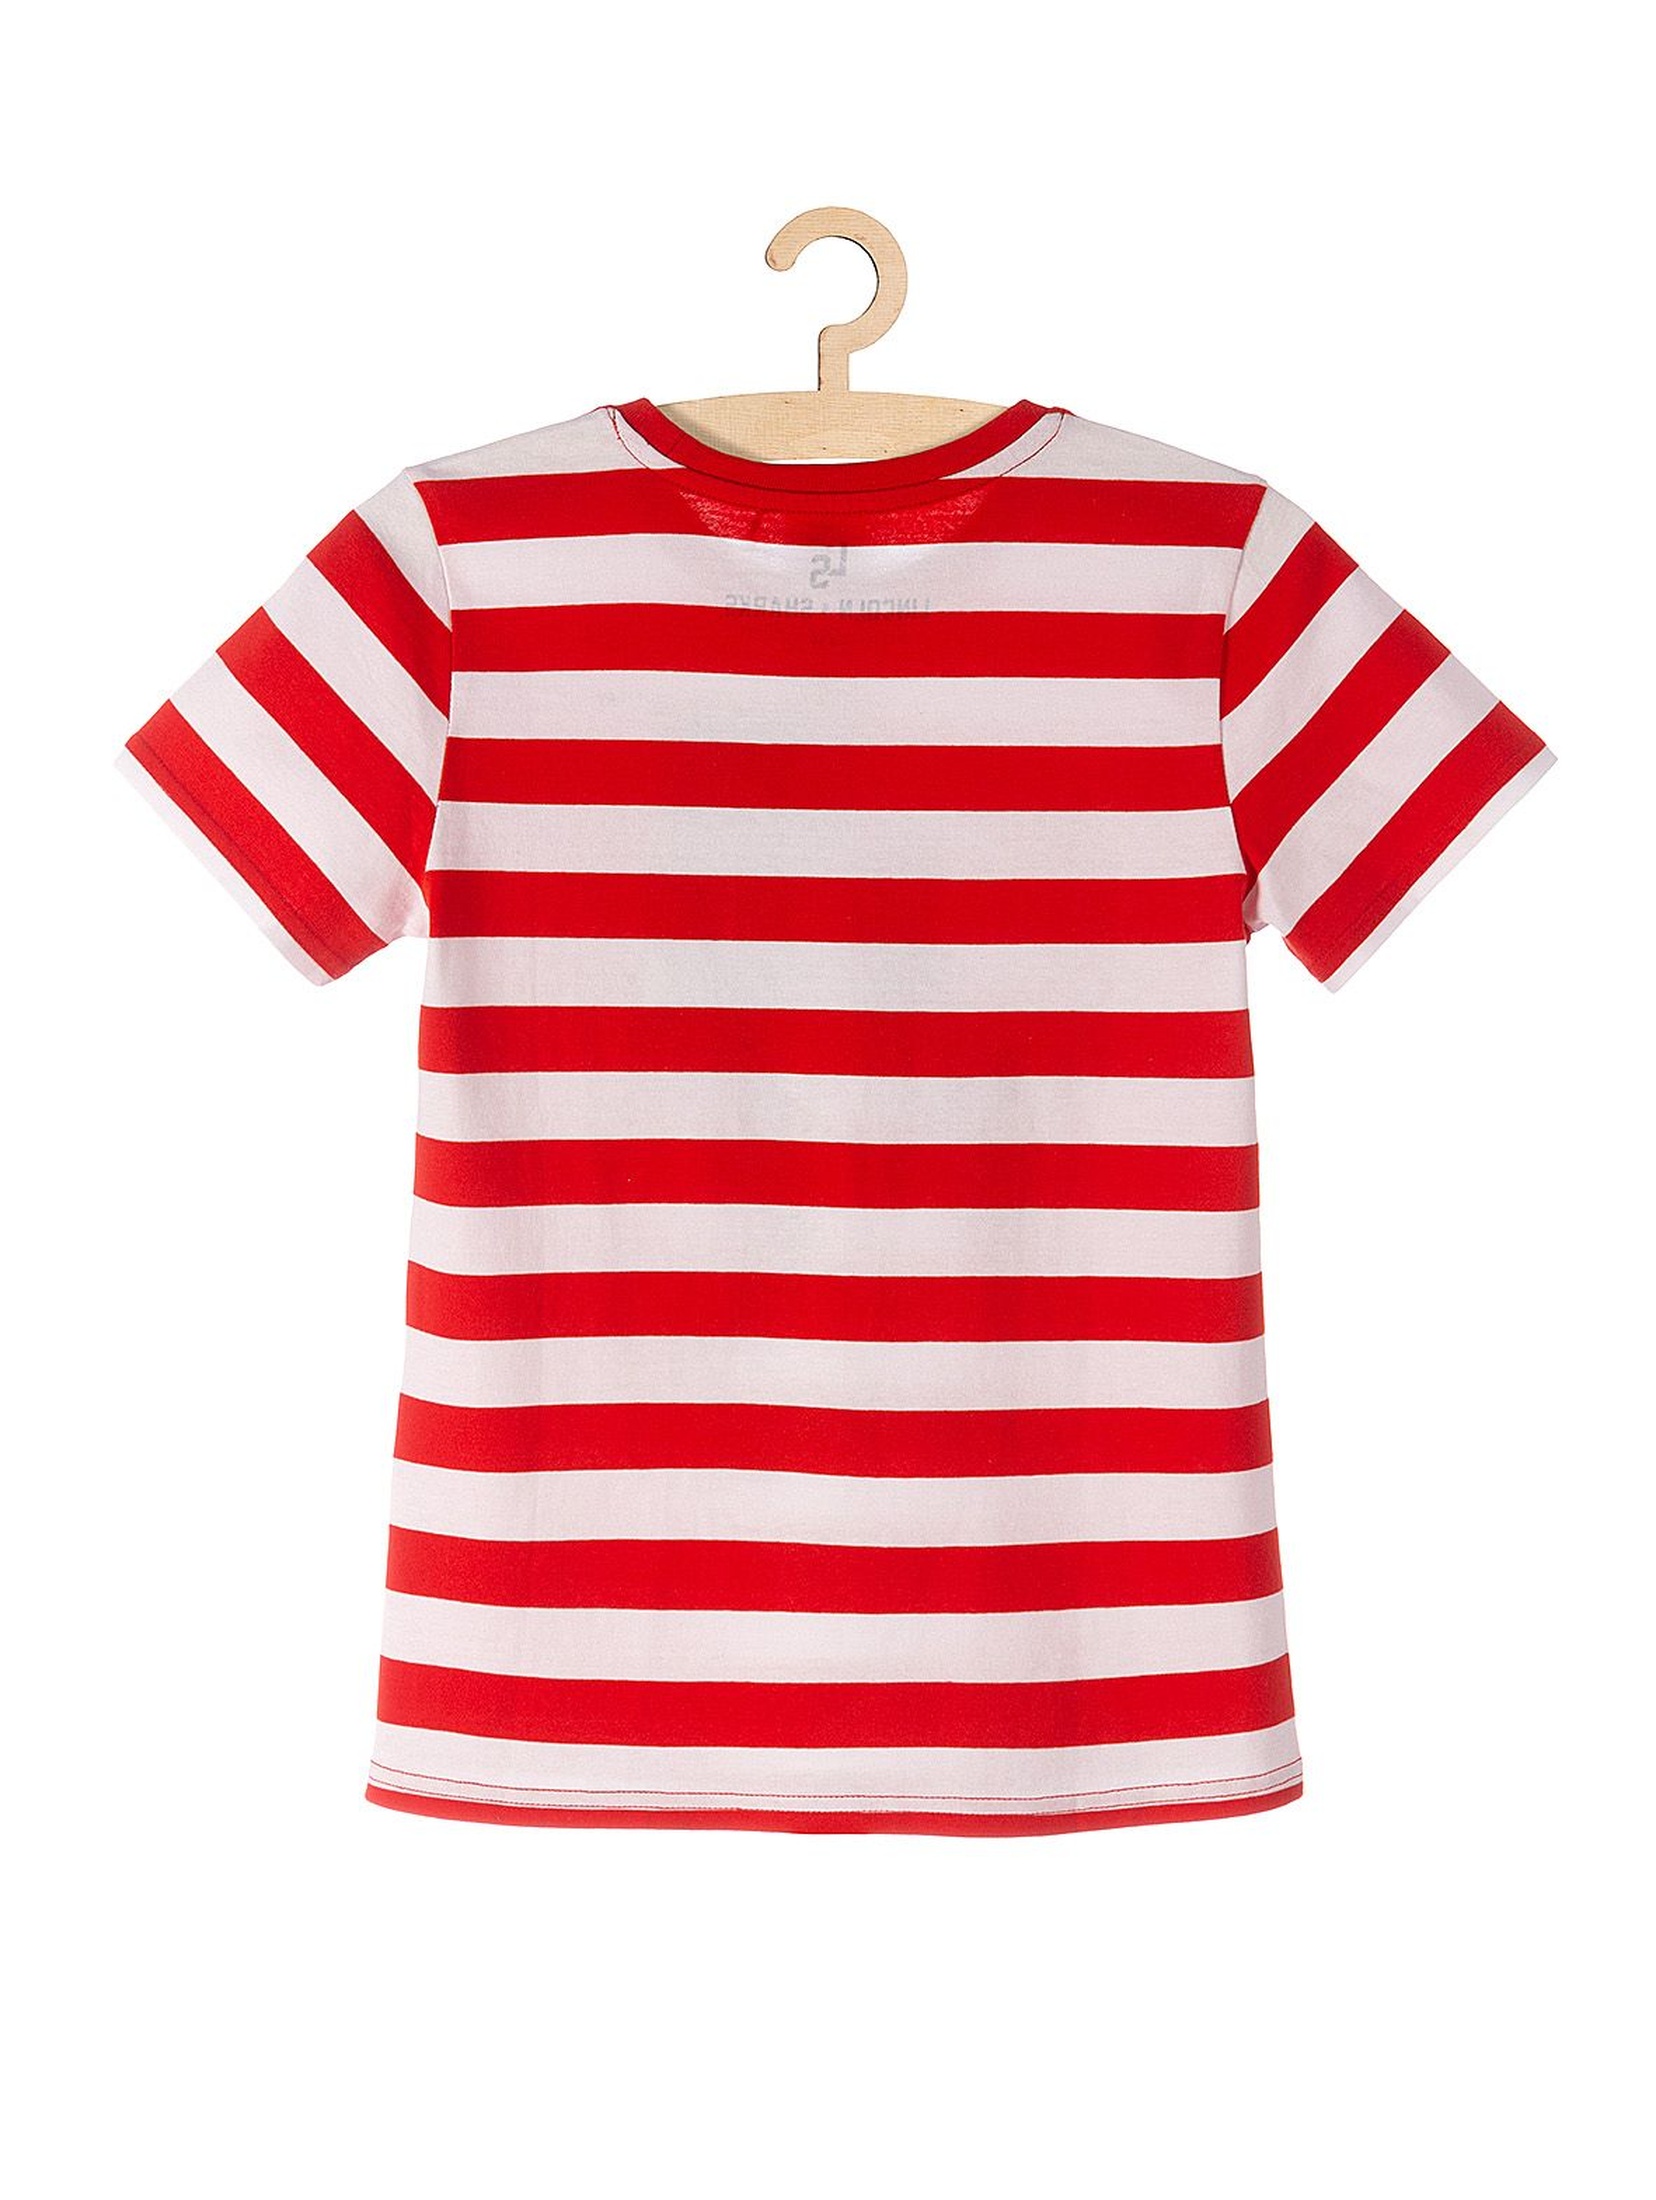 T-shirt chłopięcy czerwony w paski- 100% bawełna